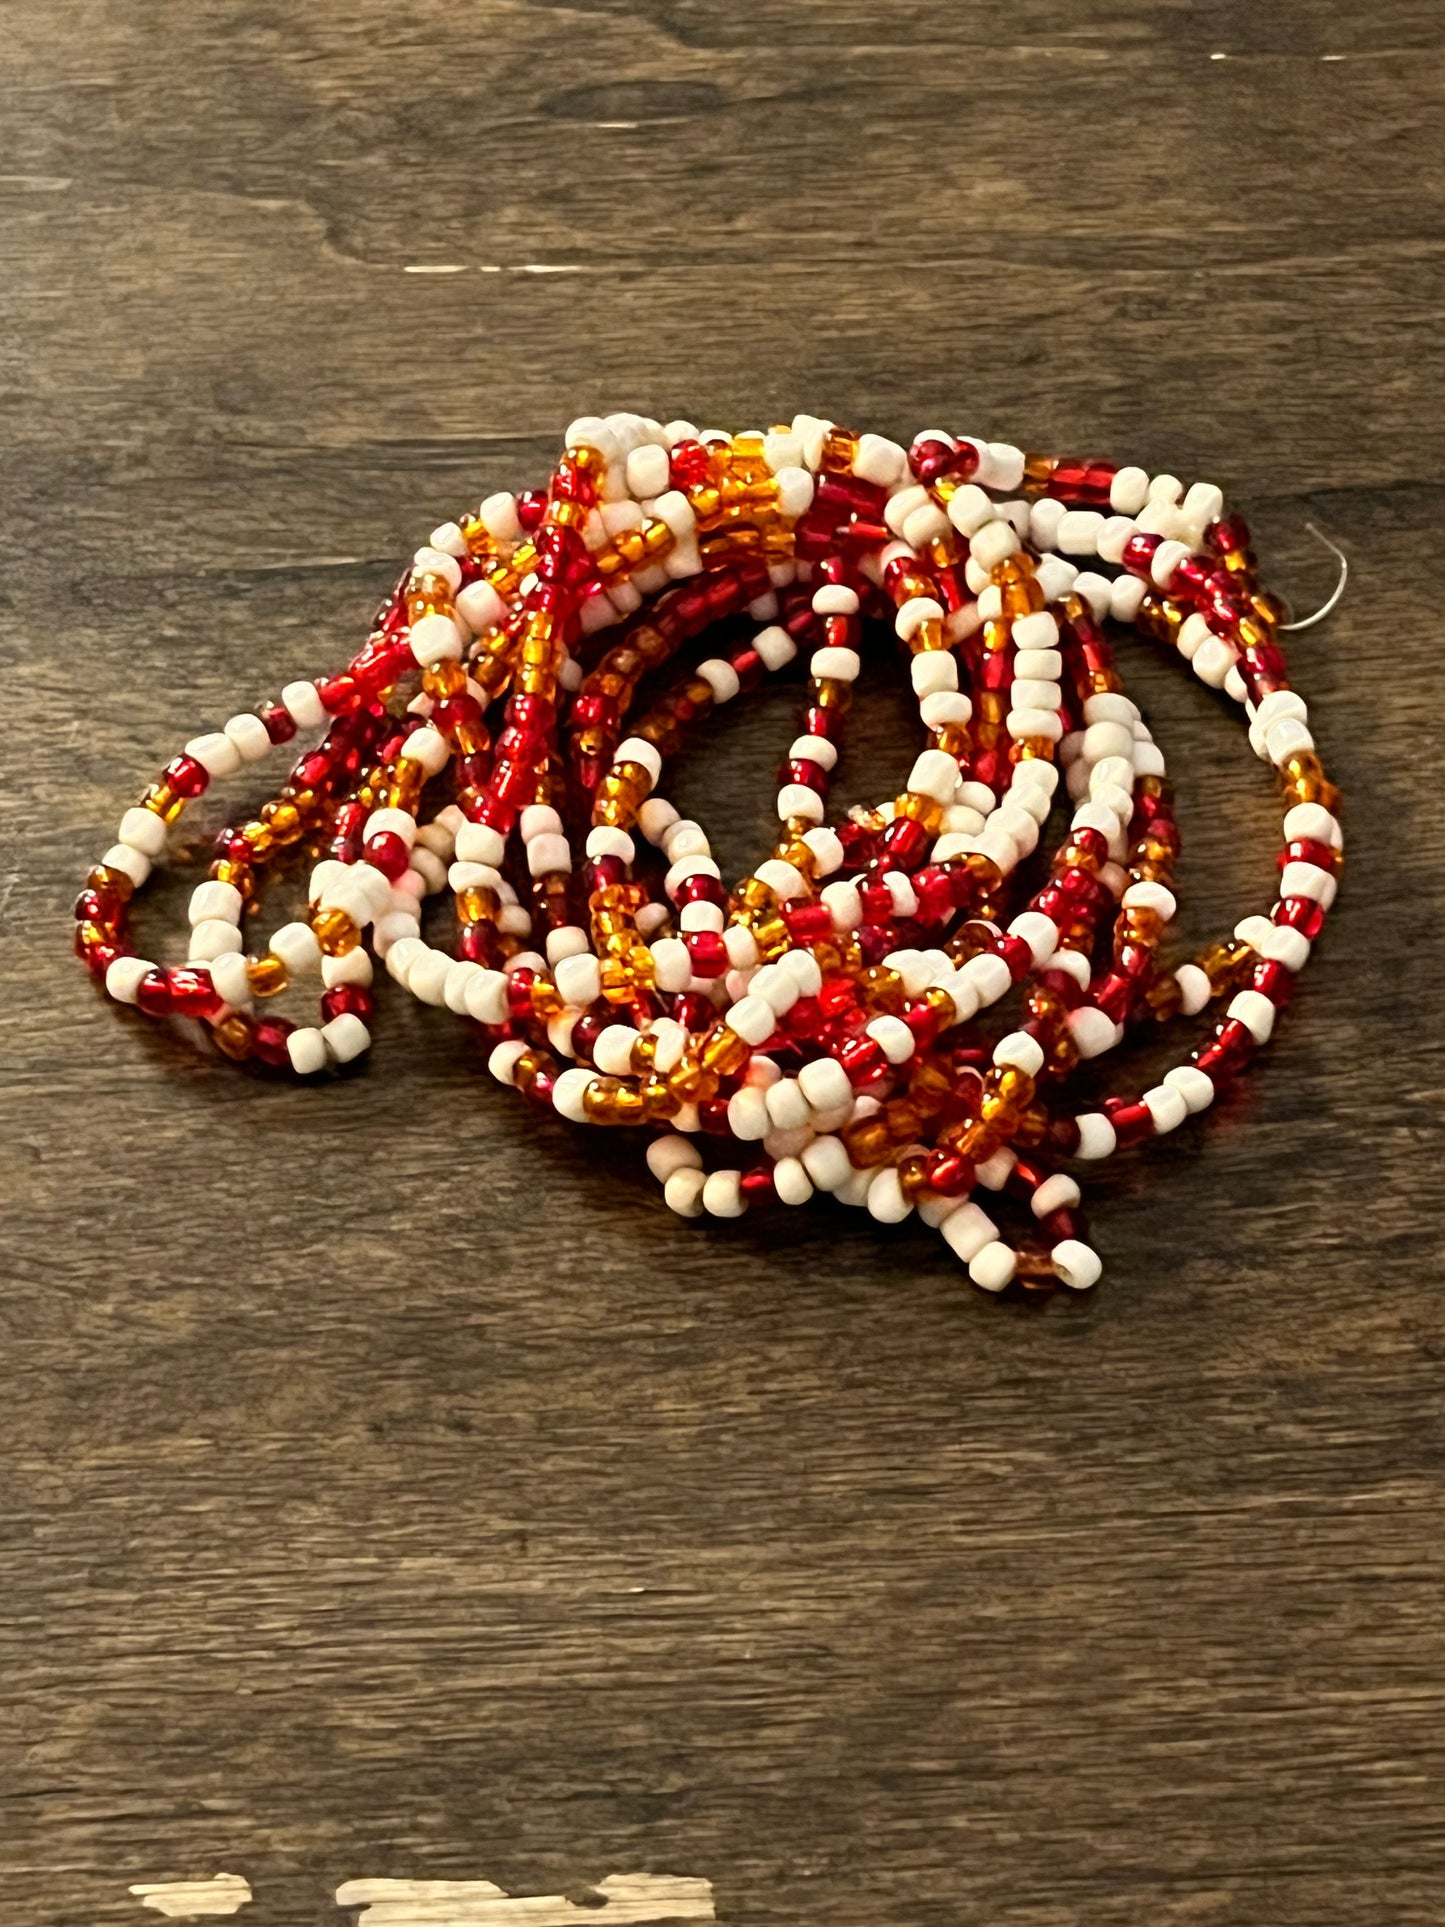 Royal Pains: Divya's Necklace and Bracelets